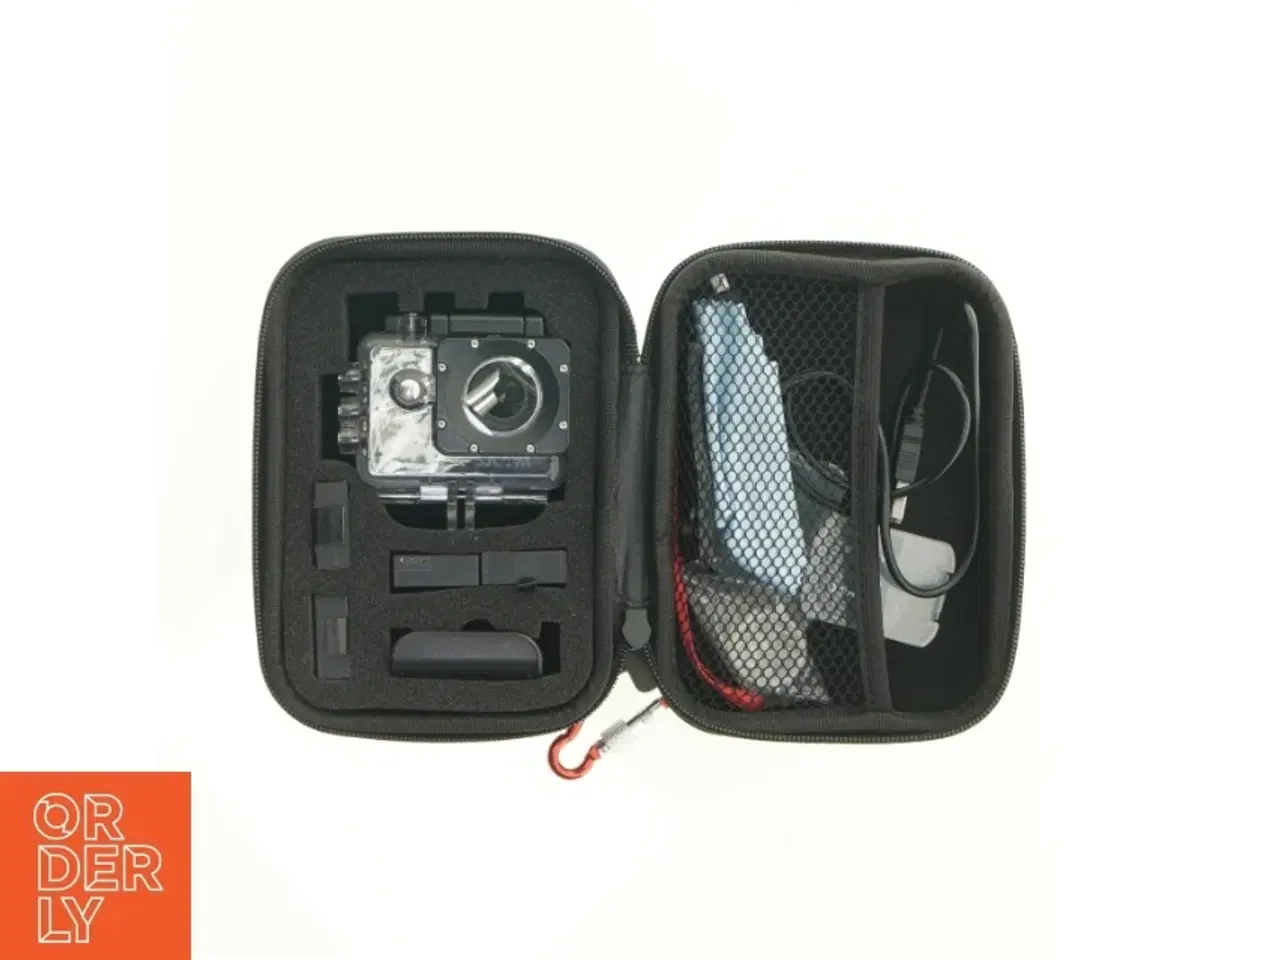 Billede 1 - Action camera fra Sjcam (str. 16 x 6 x 9 cm)